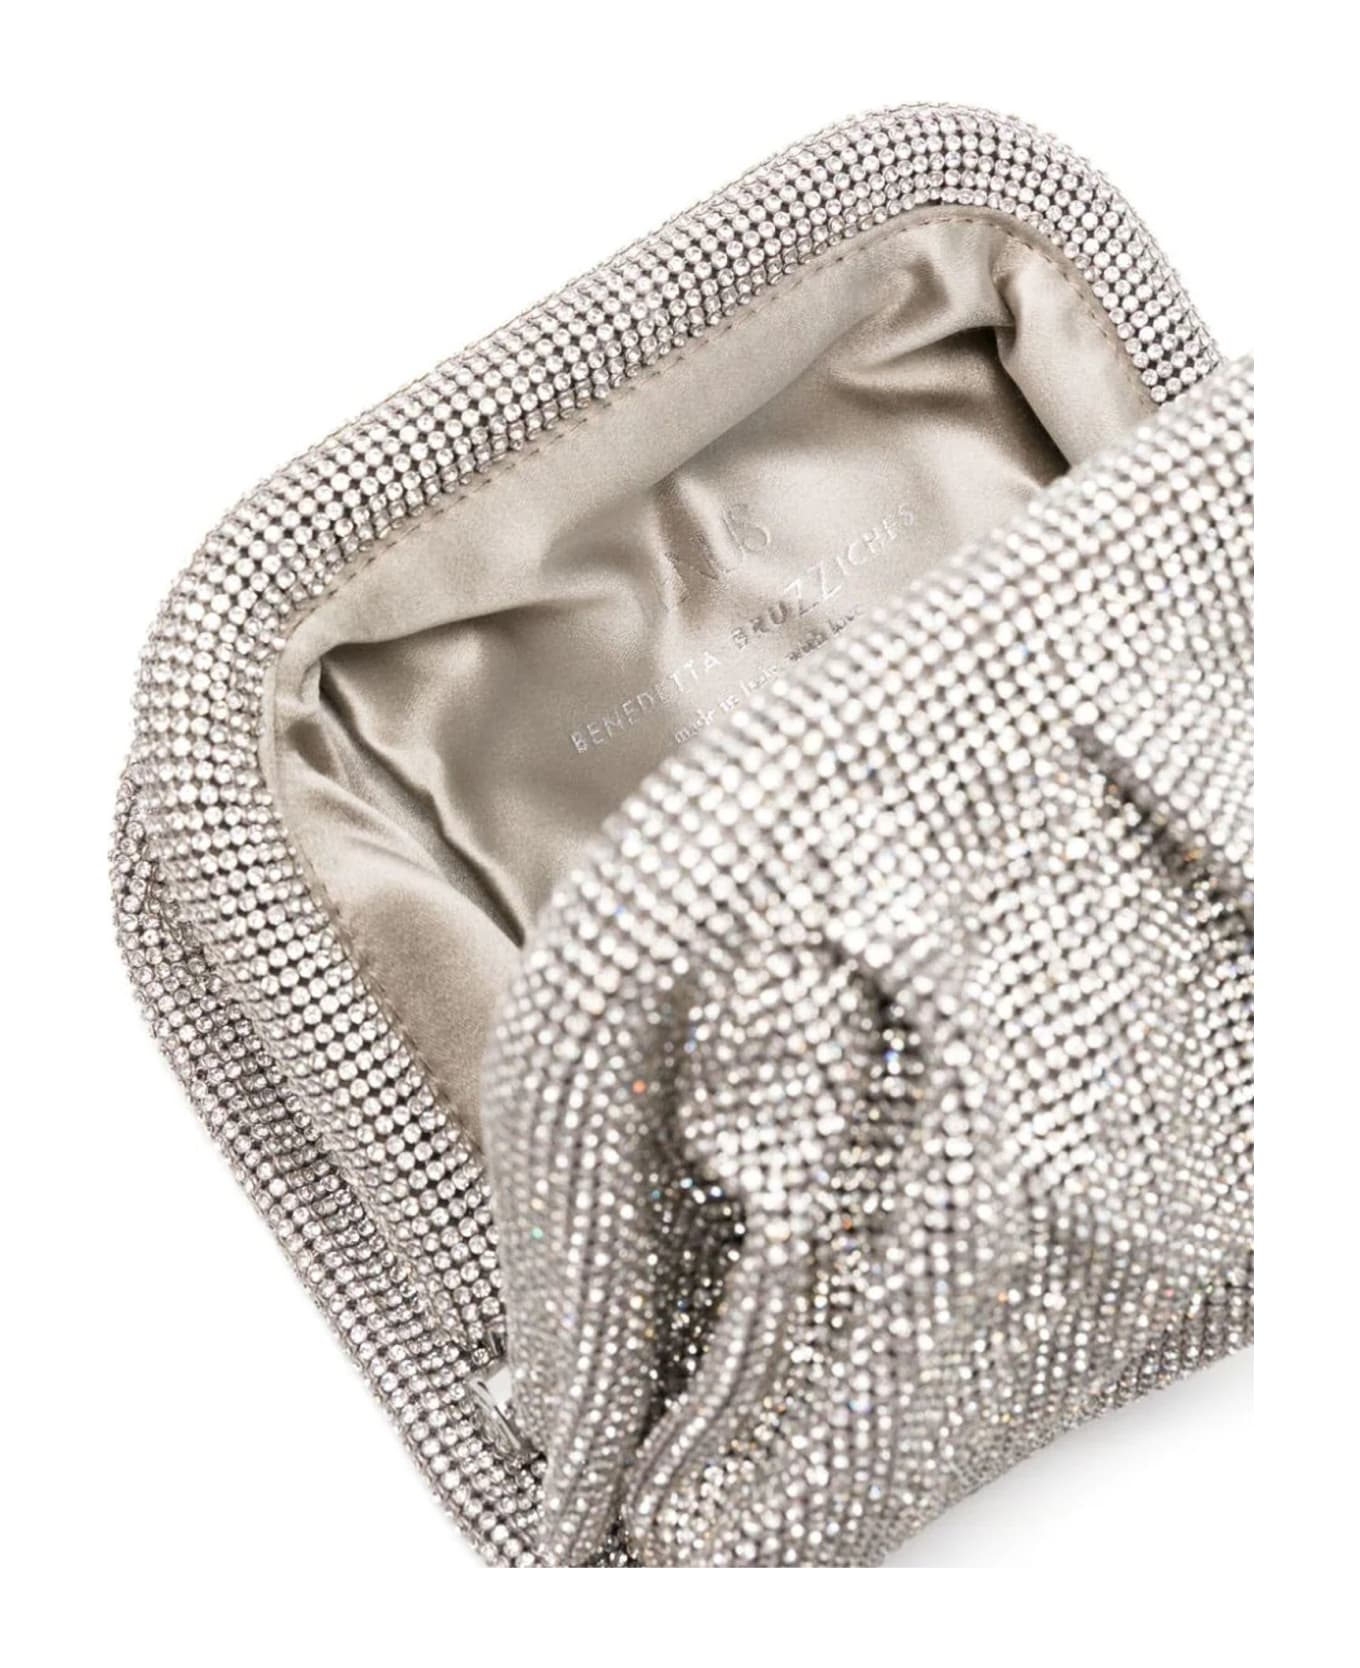 Benedetta Bruzziches Silver-tone Venus Petite Crystal Clutch Bag - Silver